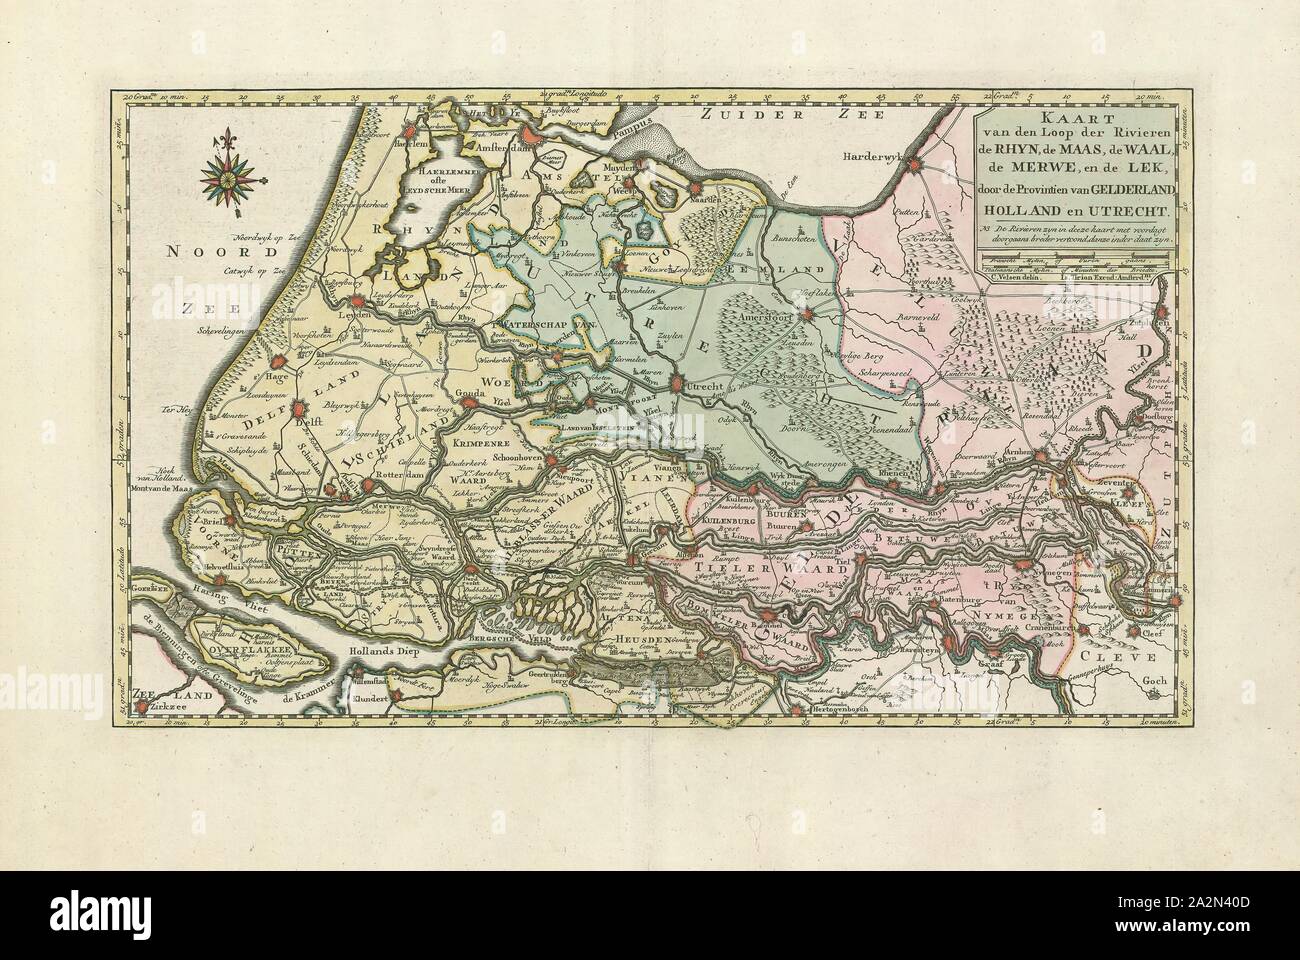 Map, Kaart van den loop der rivieren de Rhijn, de Maas, de Waal, de Merwe, en de Lek, door de provincien van Gelderland, Holland en Utrecht, Cornelis Velsen (1728-1749 fl.), Copperplate print Stock Photo